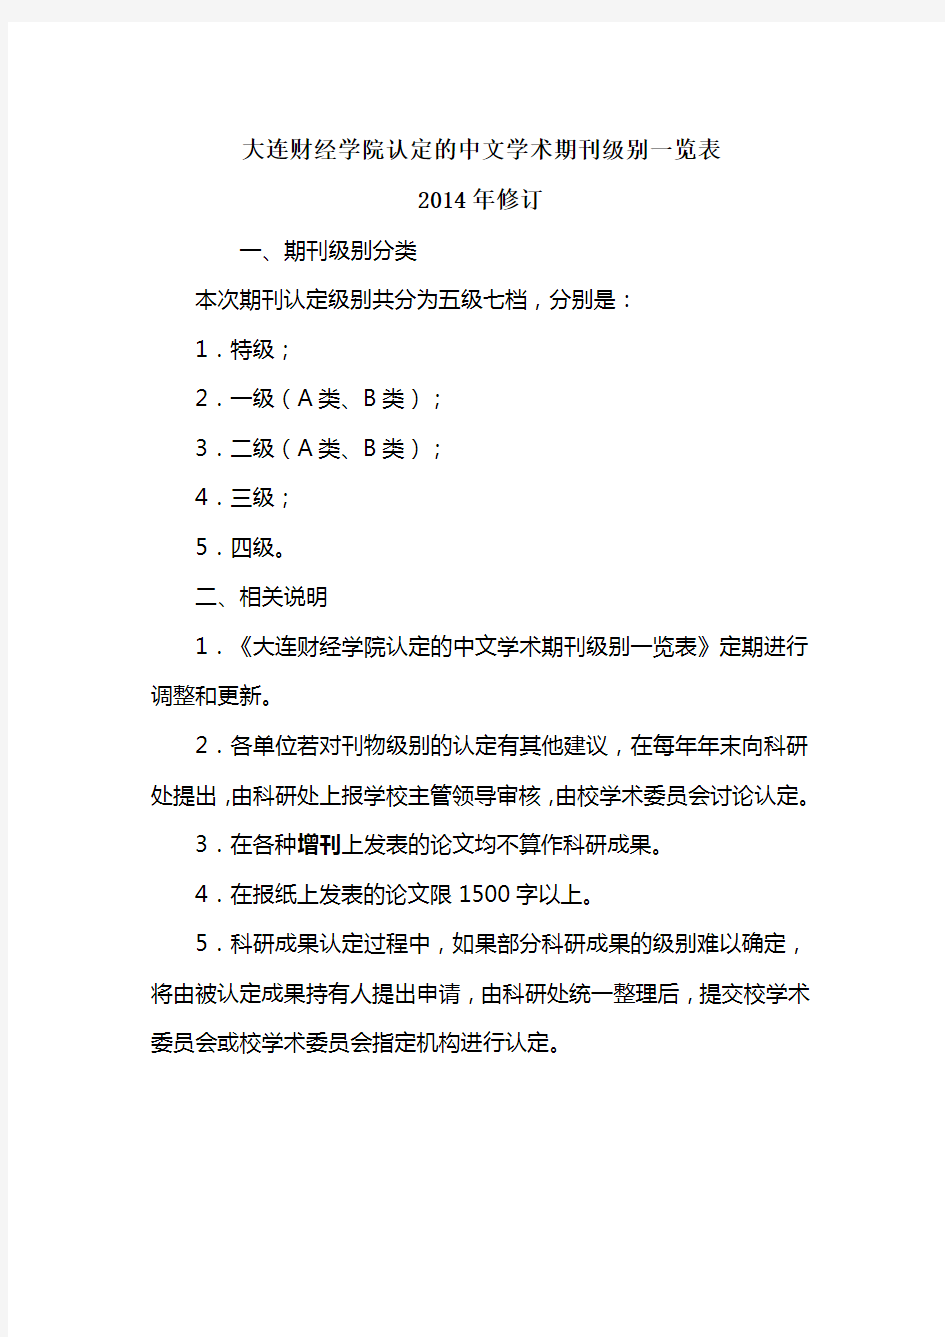 大连财经学院认定的中文学术期刊级别一览表